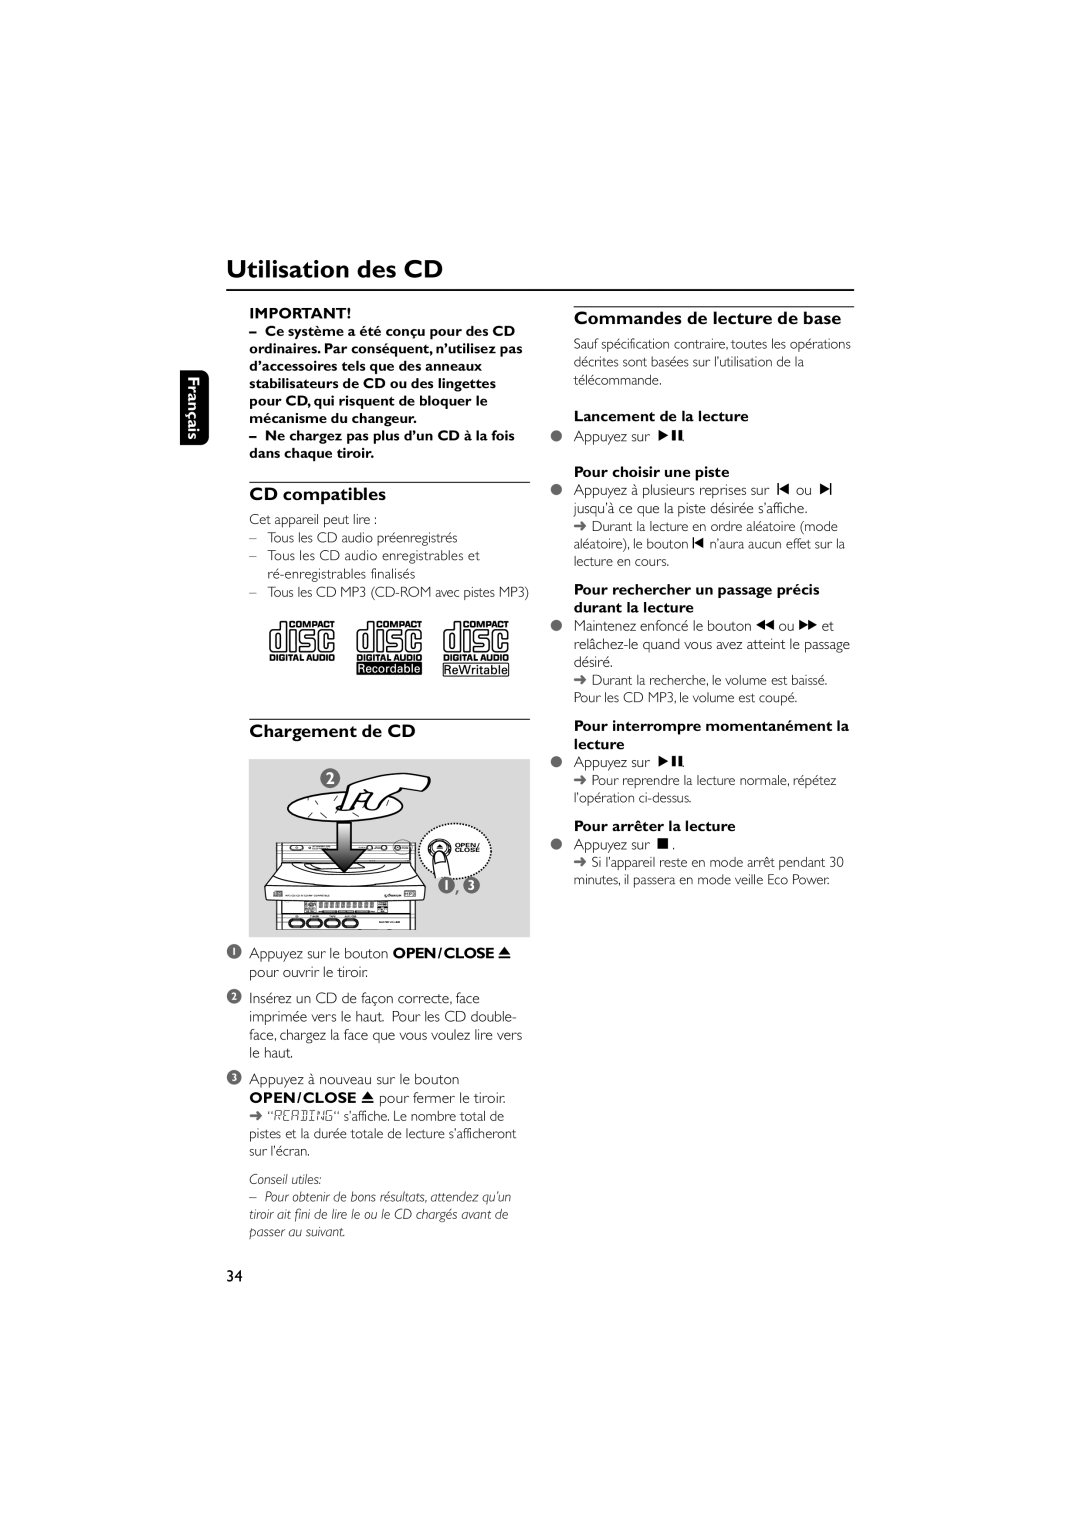 Philips MCM7 Utilisation des CD, Commandes de lecture de base, CD compatibles, Chargement de CD, Français, Conseil utiles 